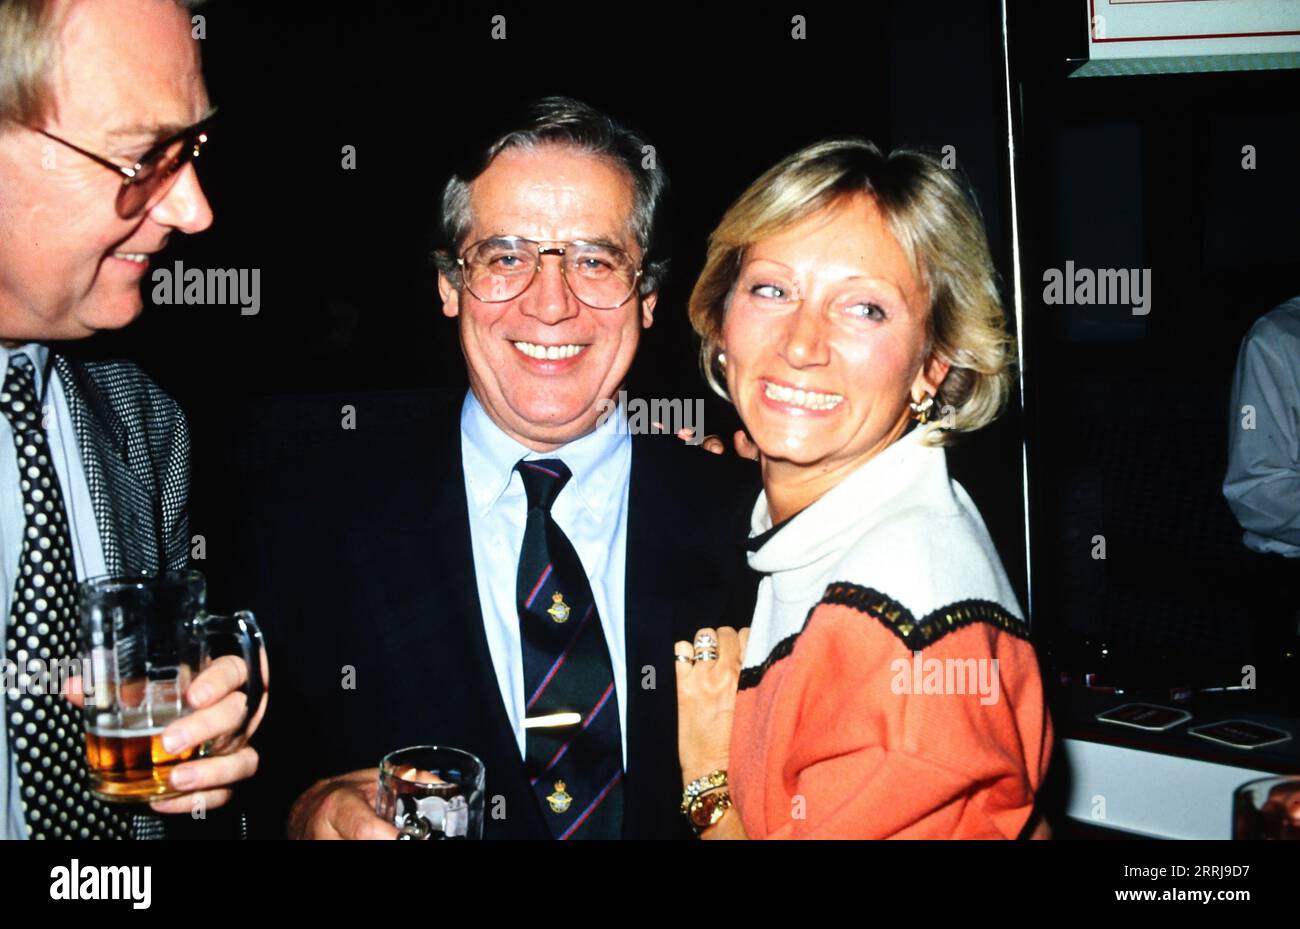 Ehepaar Paul und Rita Schockemöhle, deutscher Unternehmer und ehemaliger Springreiter, Deutschland um 1993. Stock Photo